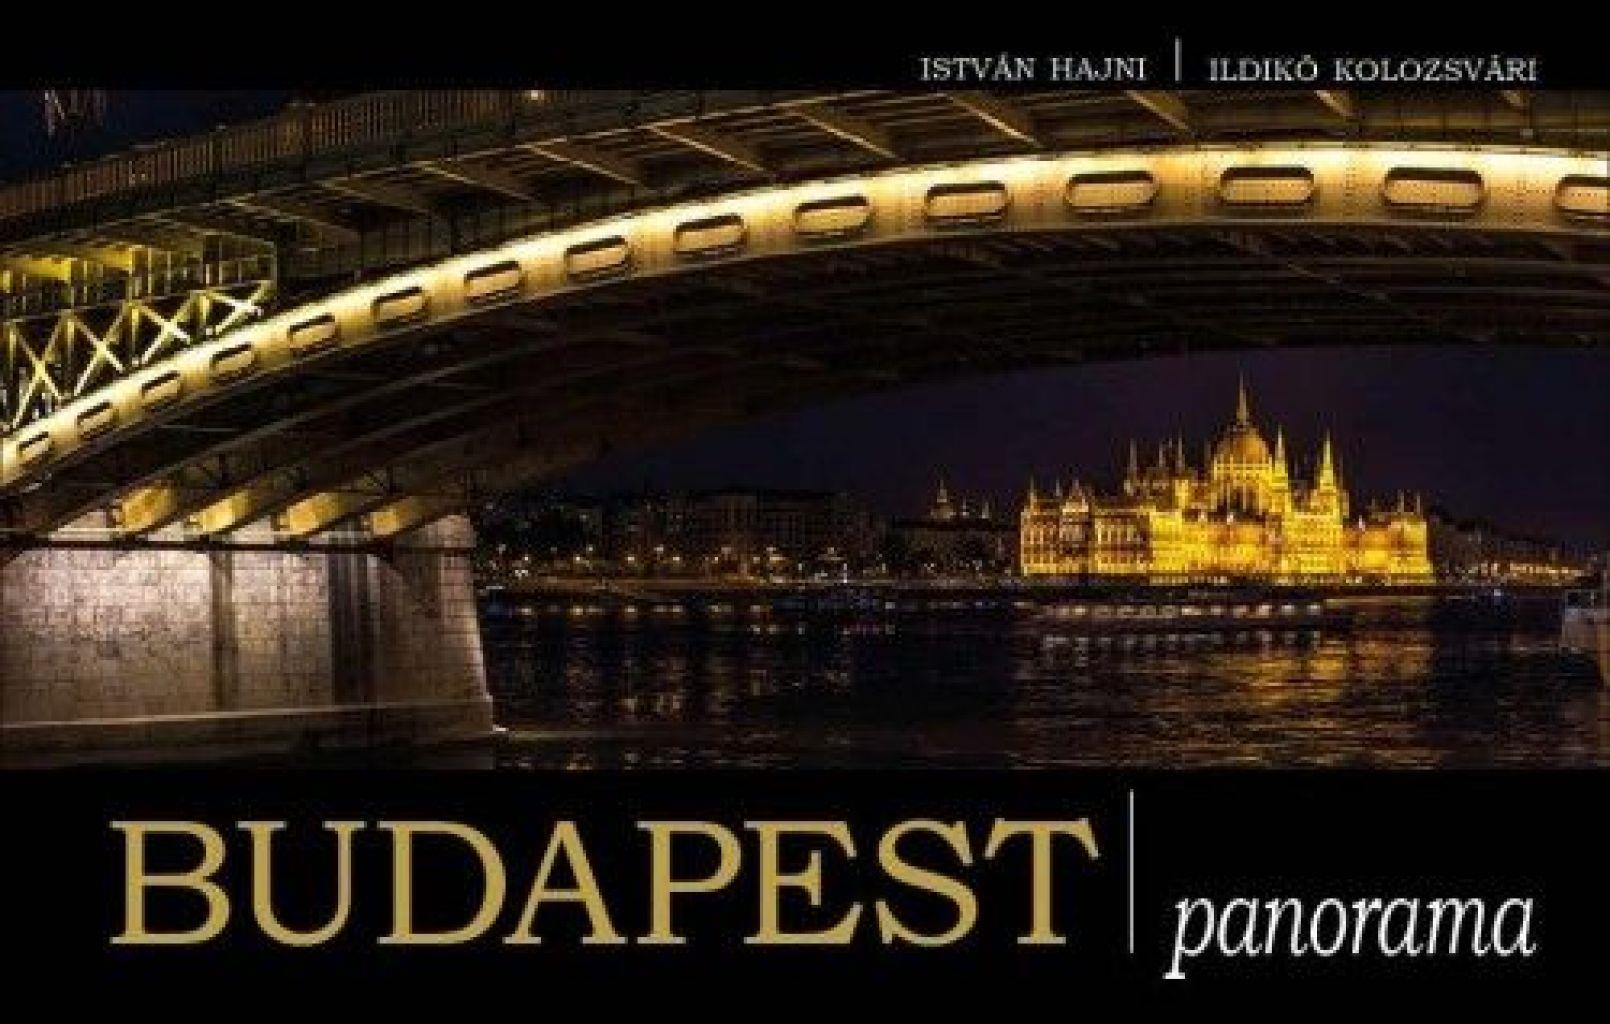 Kolozsvári Ildikó - Budapest panorama